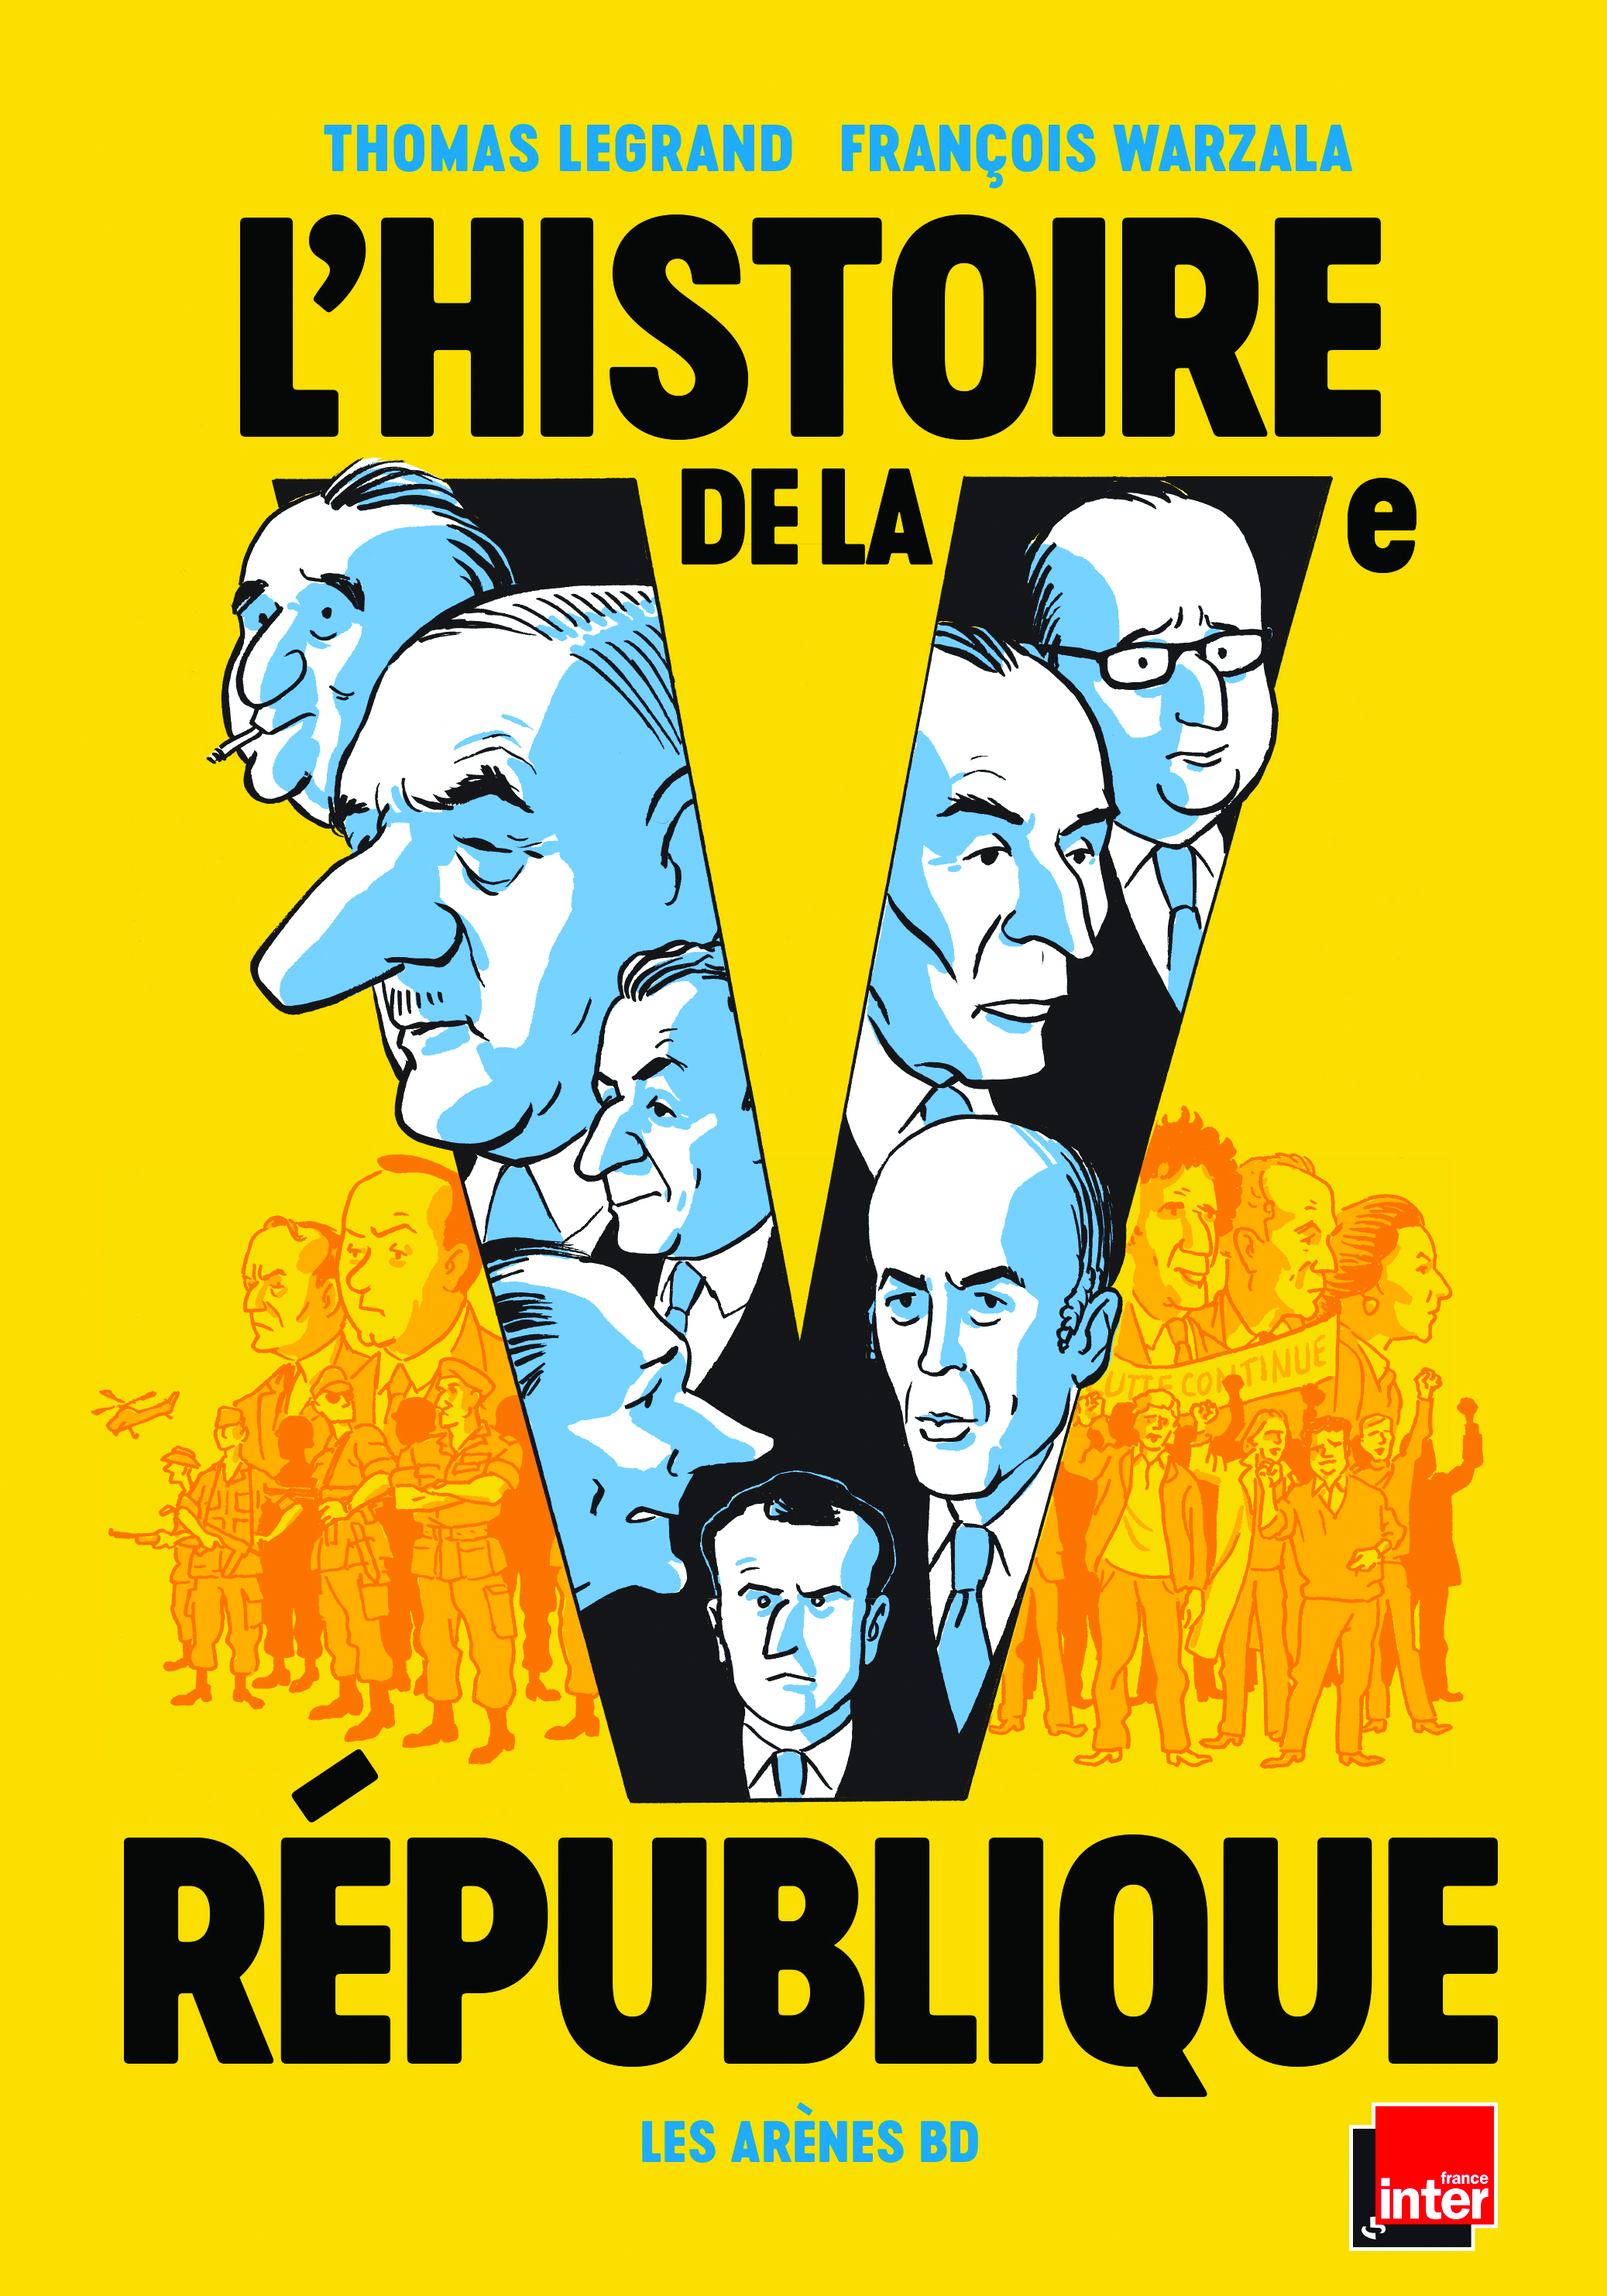 <b> La Ve République en bande dessinée : un miroir grossissant mais intéressant</b> </br> </br> Par Olivier Beaud